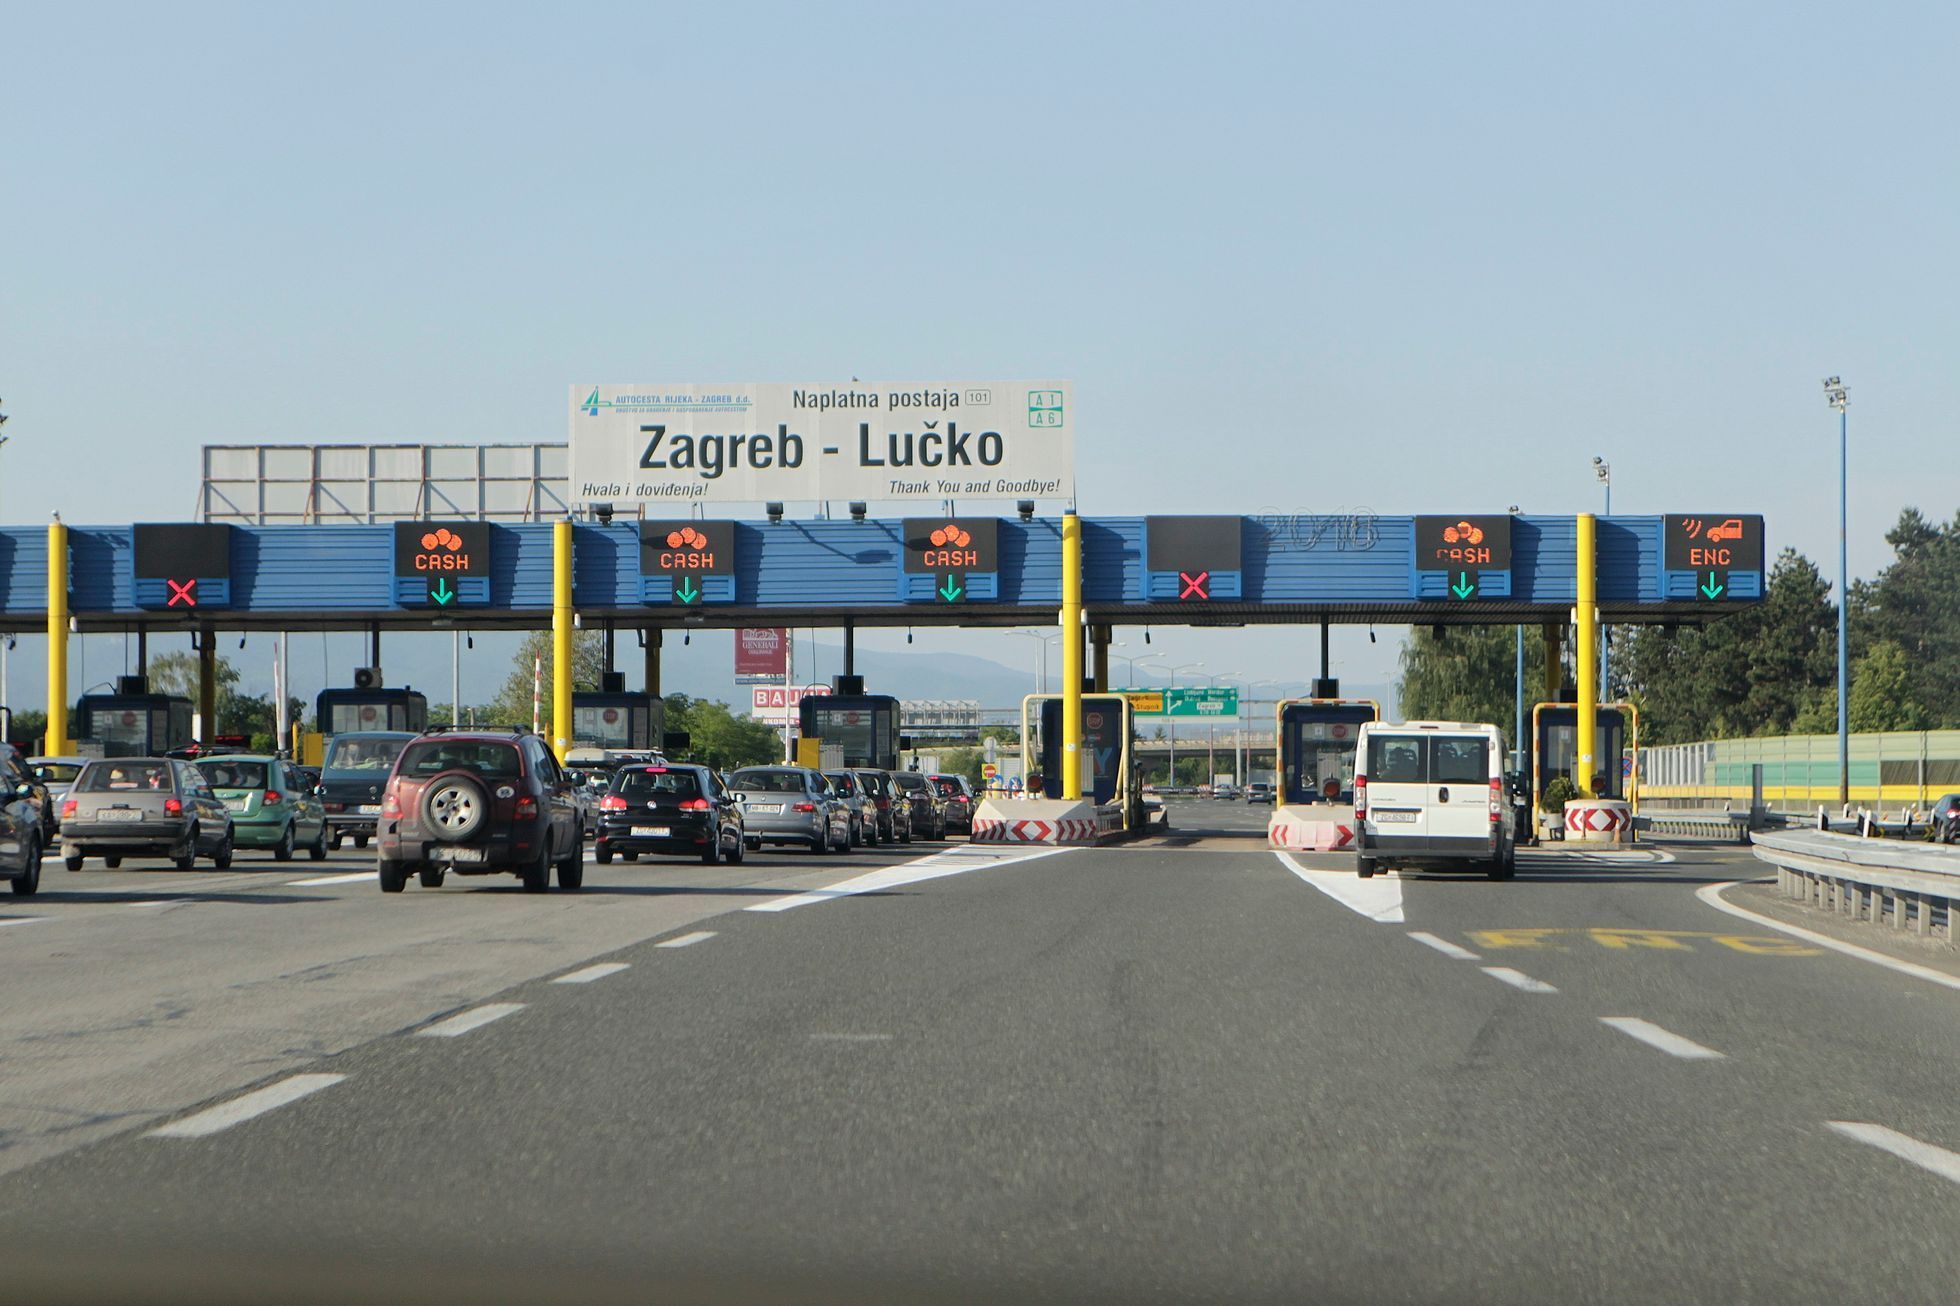 mýtnice Zagreb Lučko